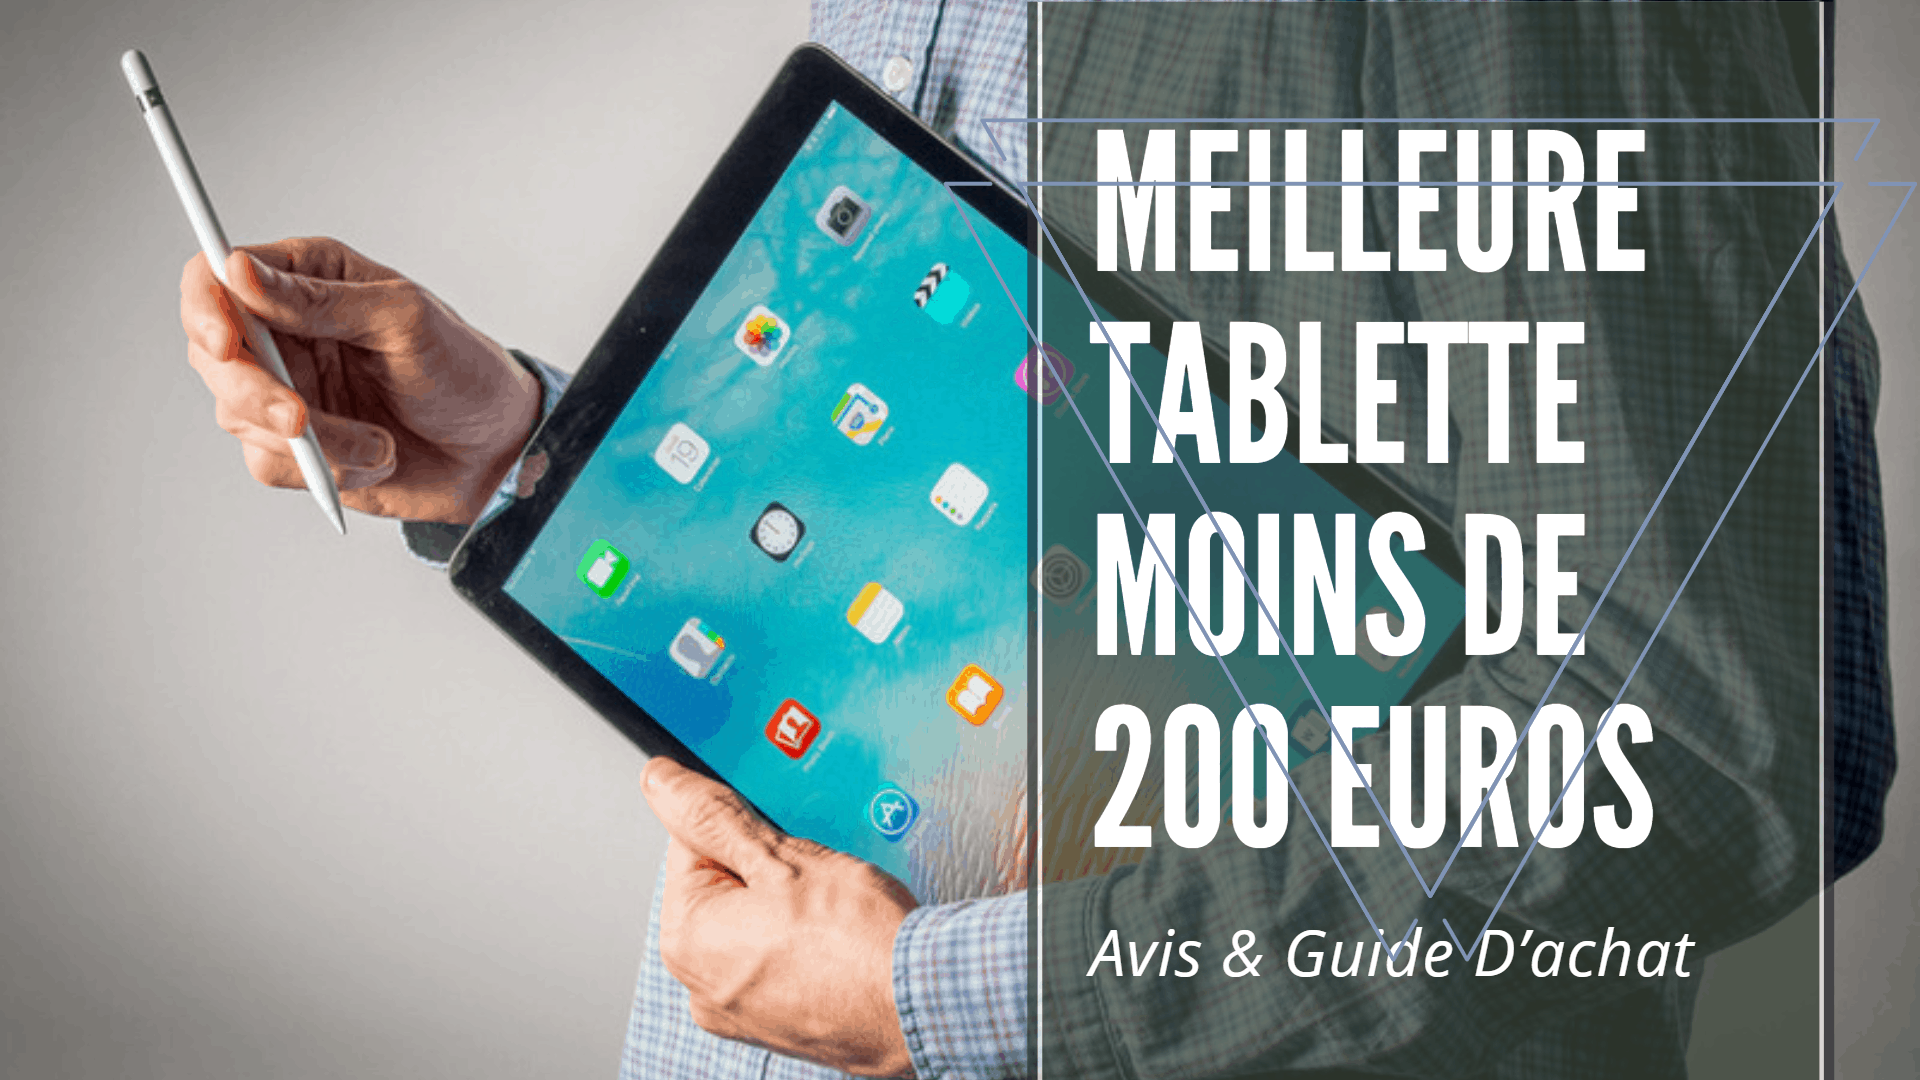 Meilleure tablette moins de 200 euros